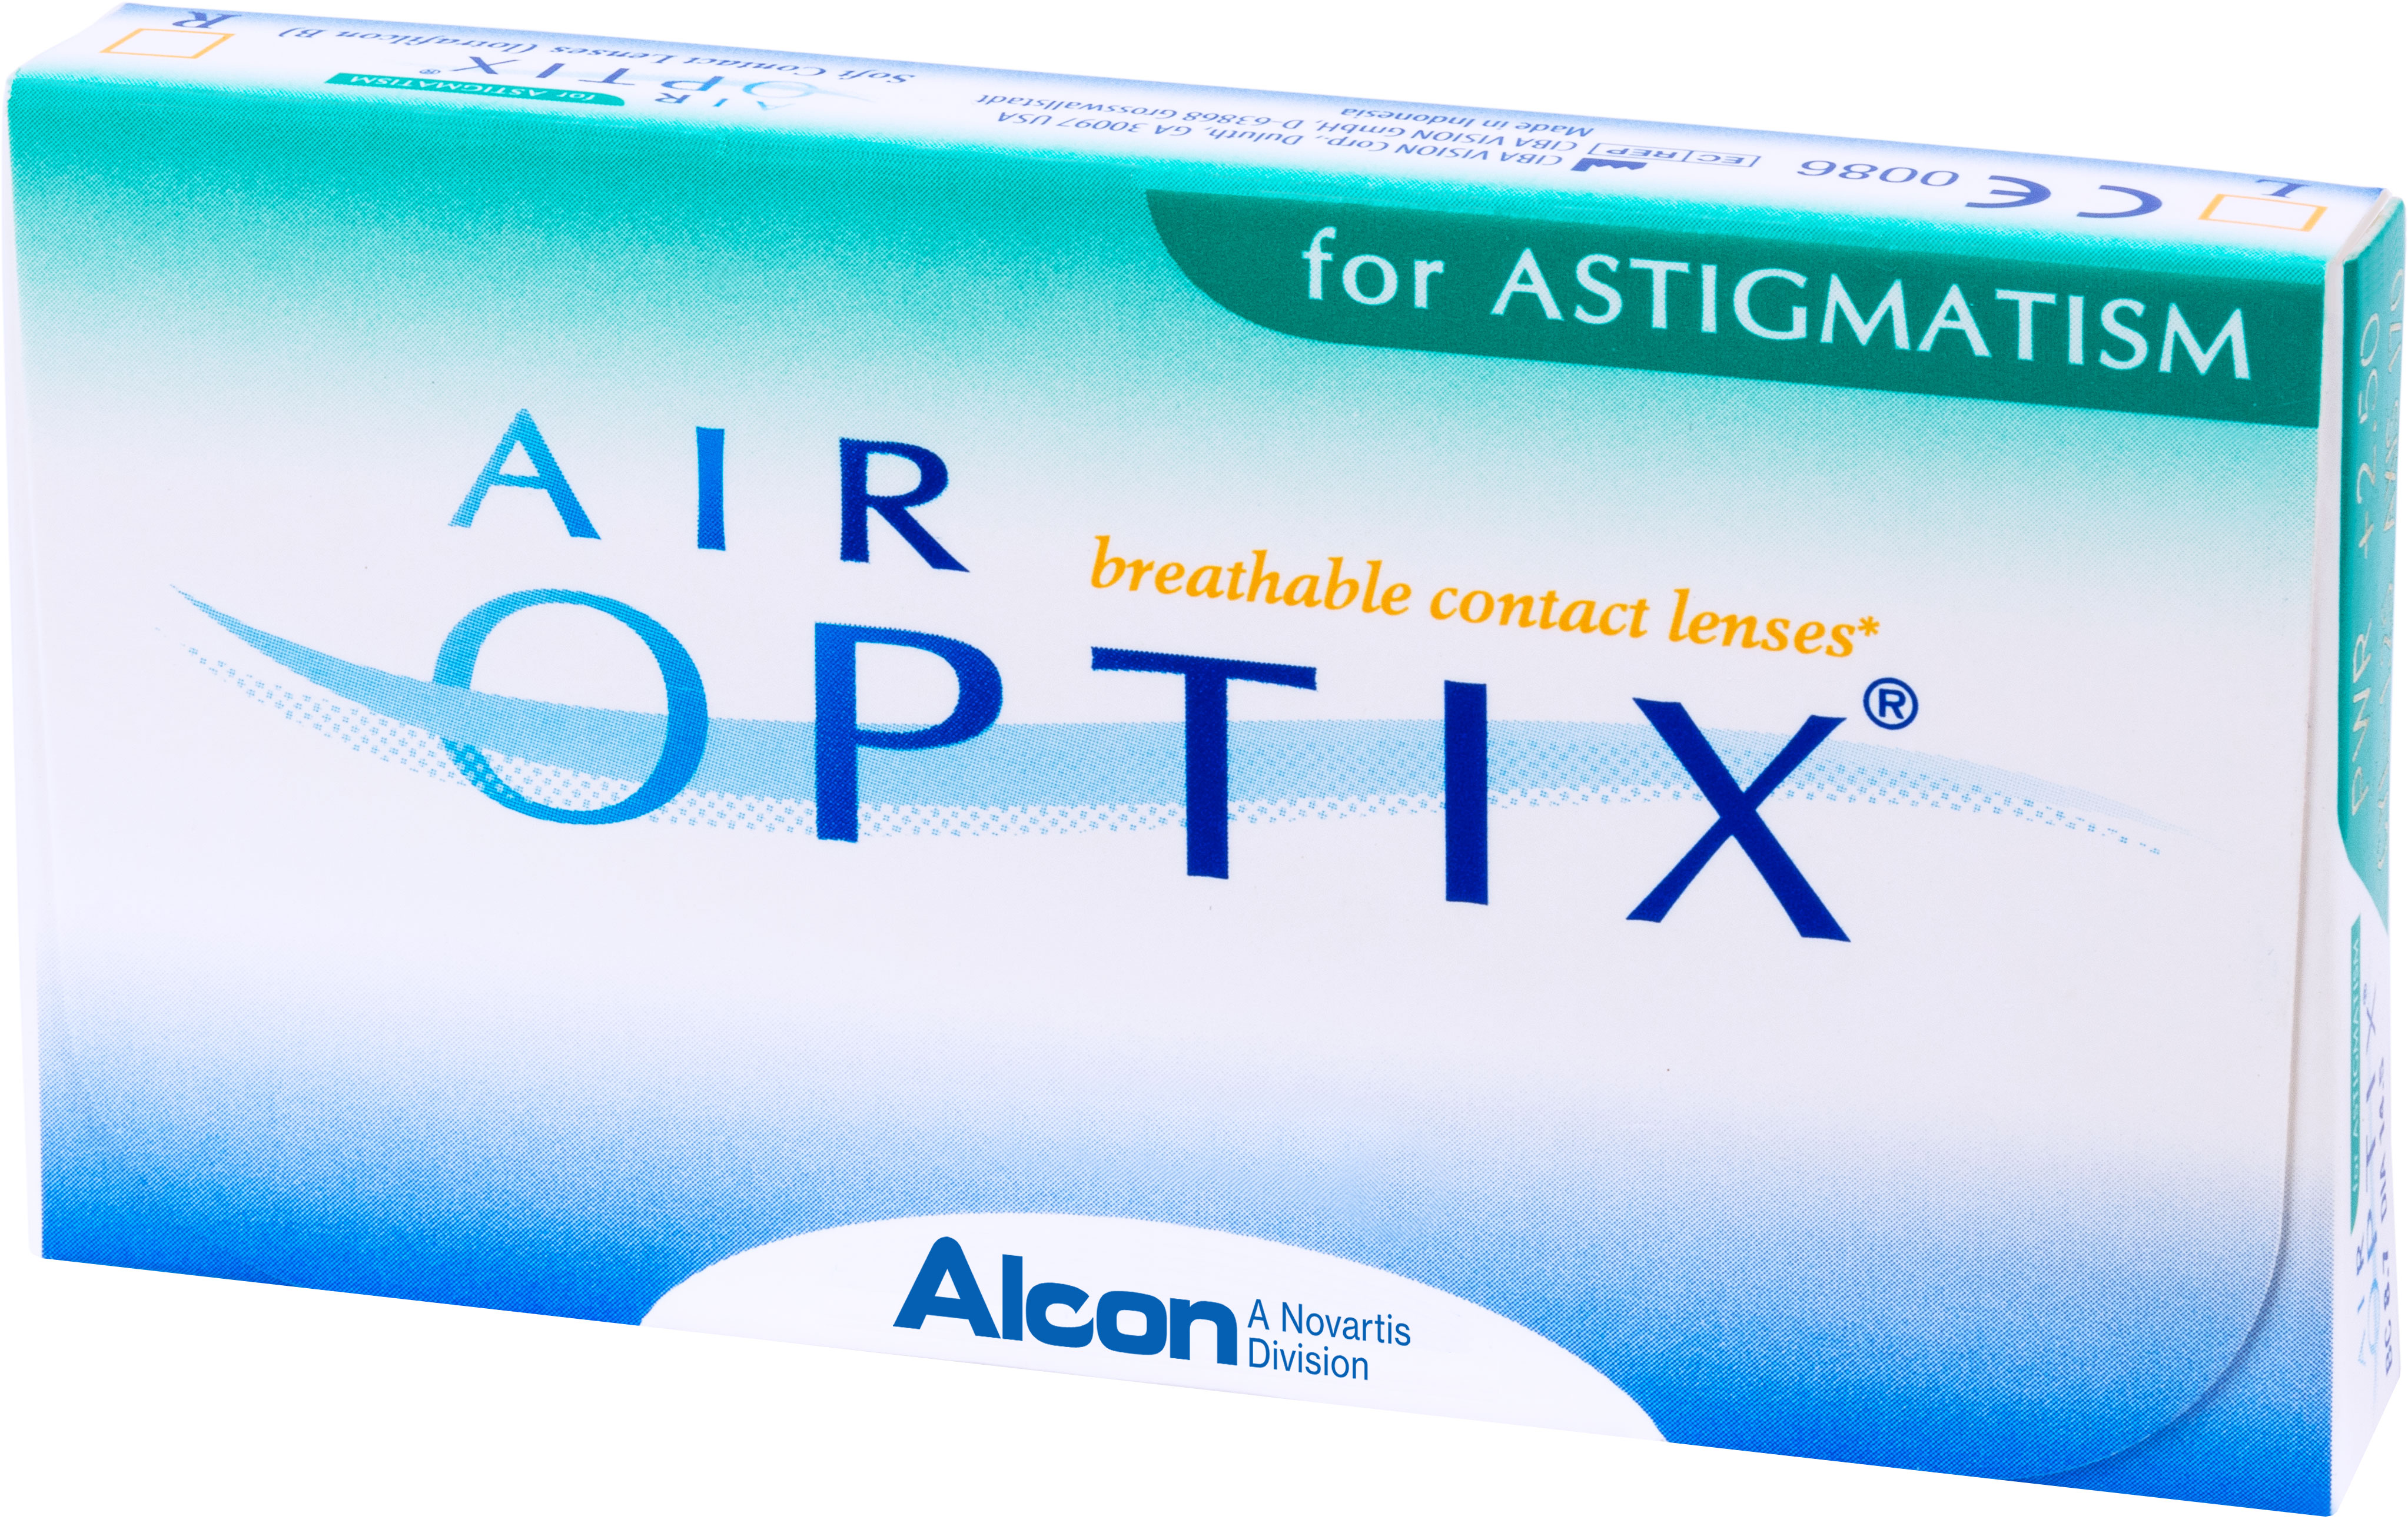 купить Аlcon контактные линзы Air Optix for Astigmatism 3pk /BC 8.7/DIA14.5/PWR -0.25/CYL -0.75/AXIS 100 - заказ и доставка в Москве и Санкт-Петербурге